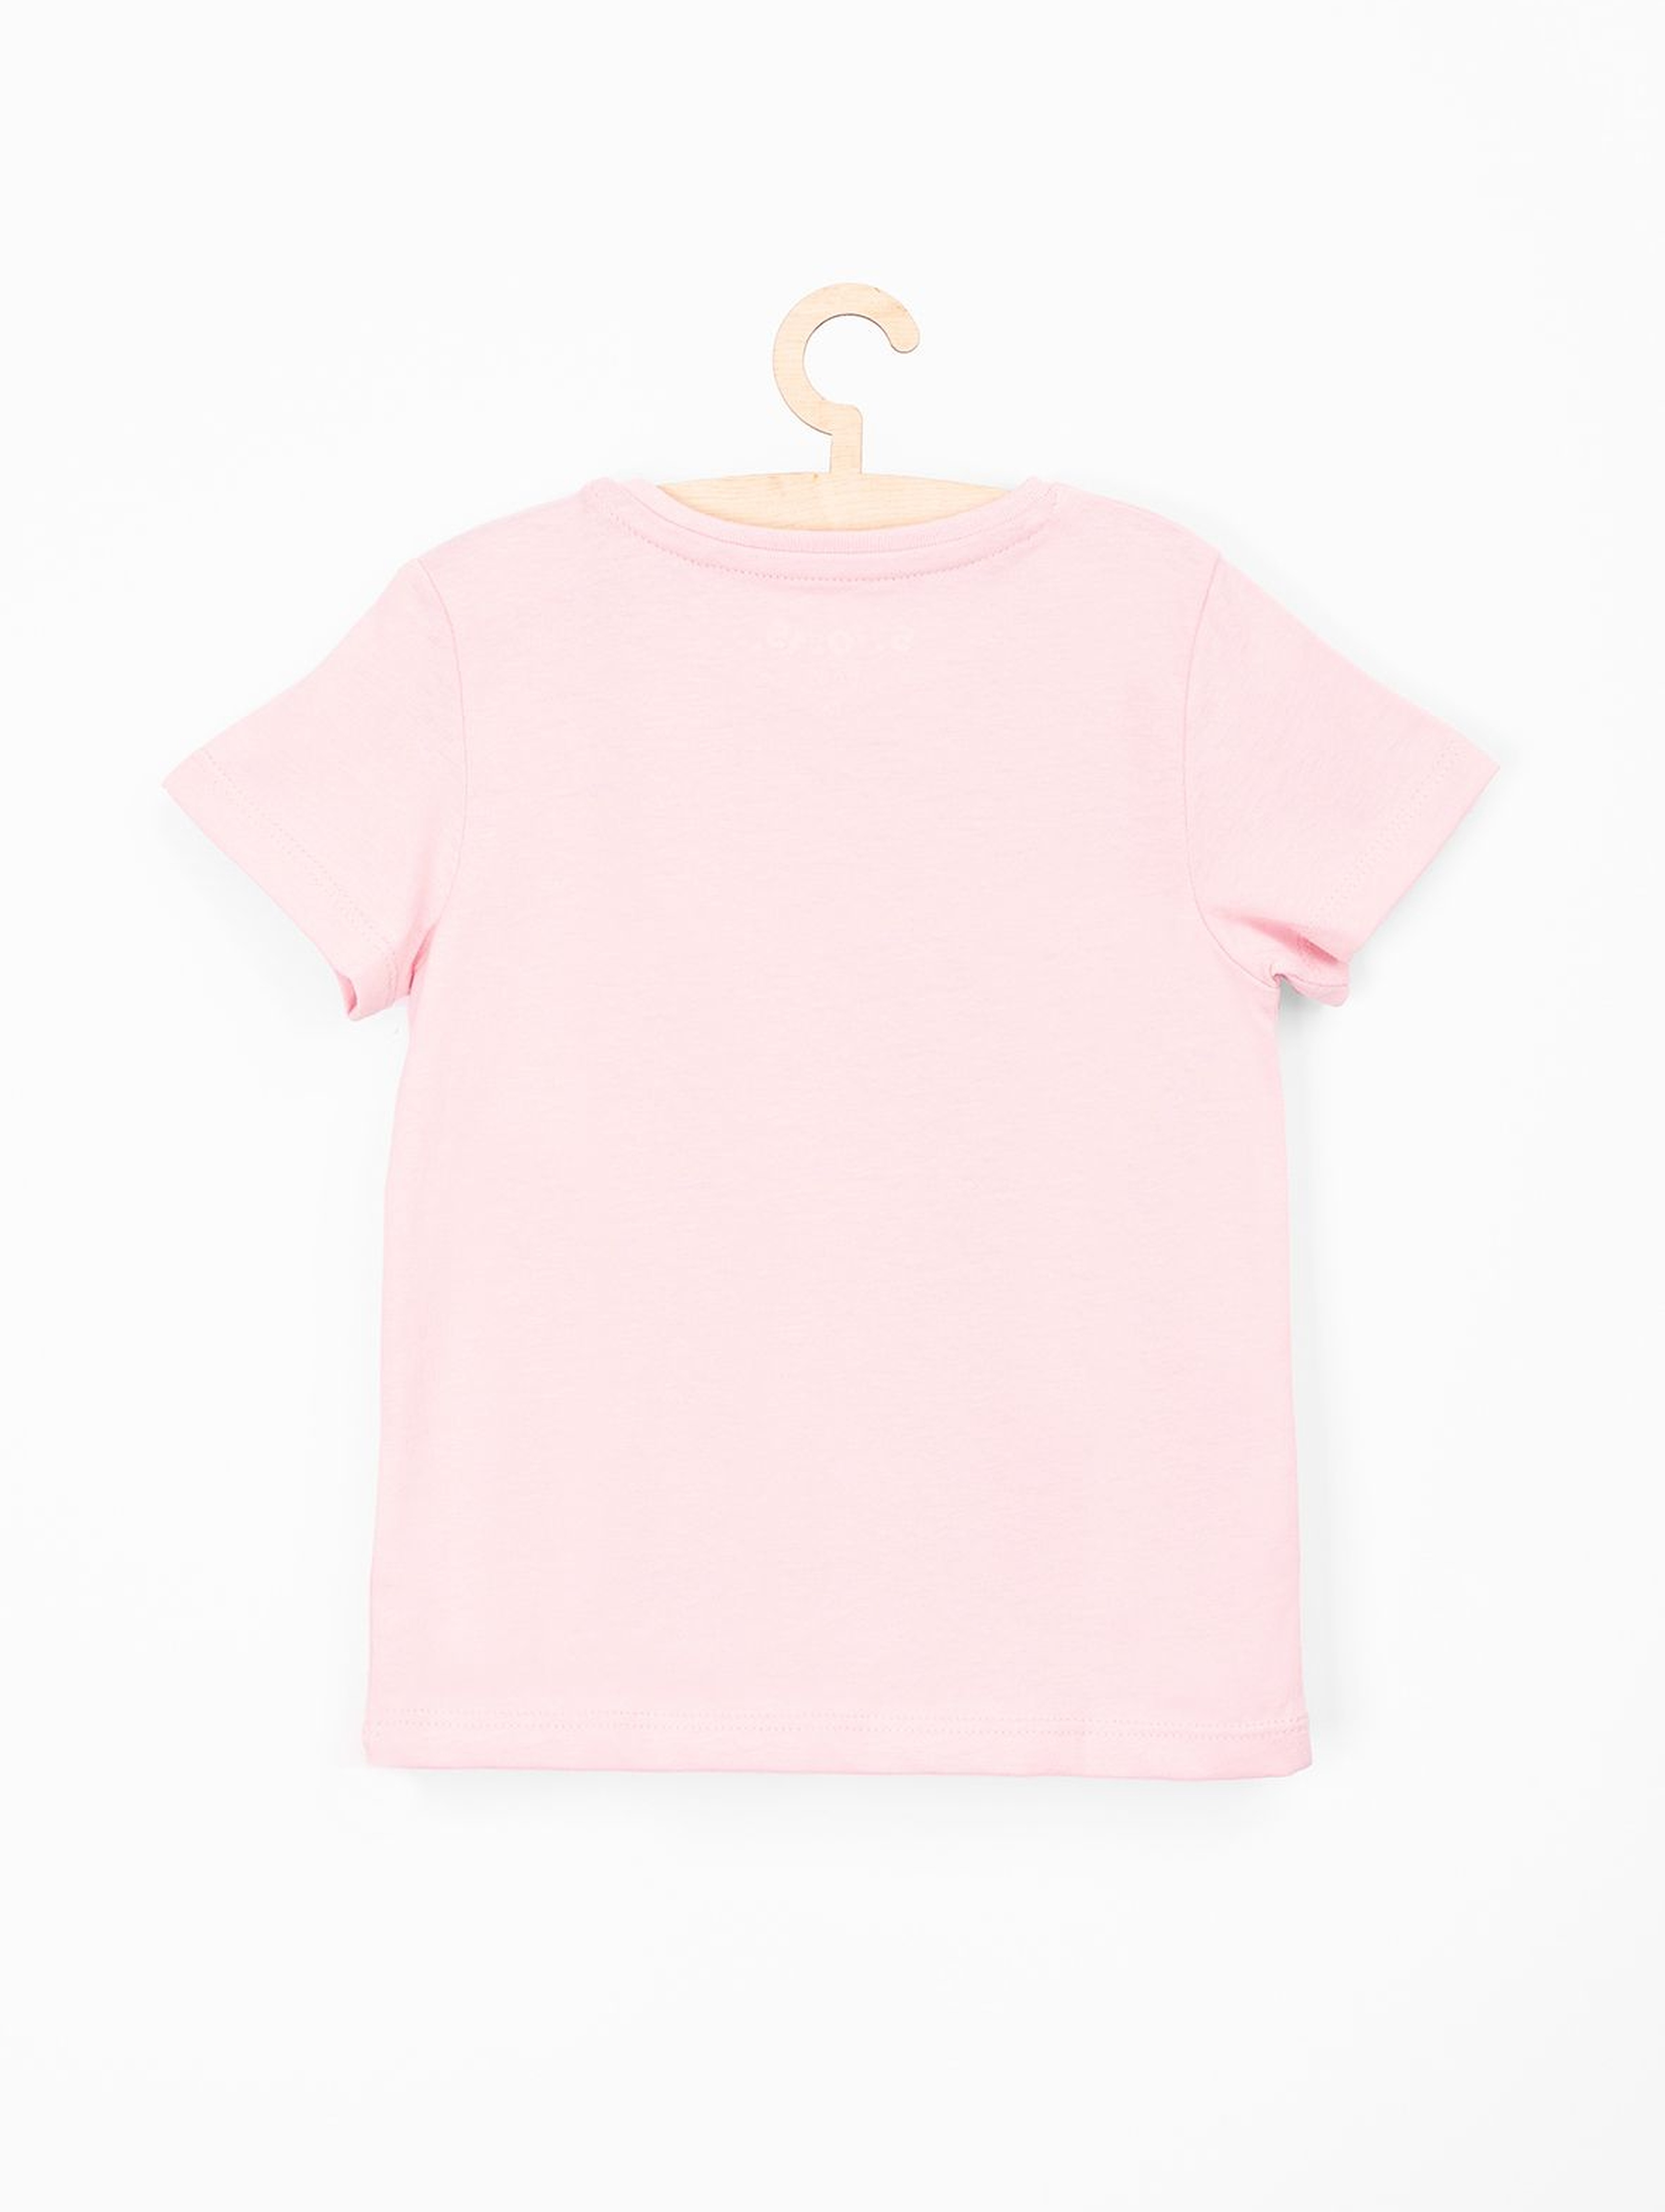 Różowy t-shirt dla niemowlaka- słodka wczasowiczka